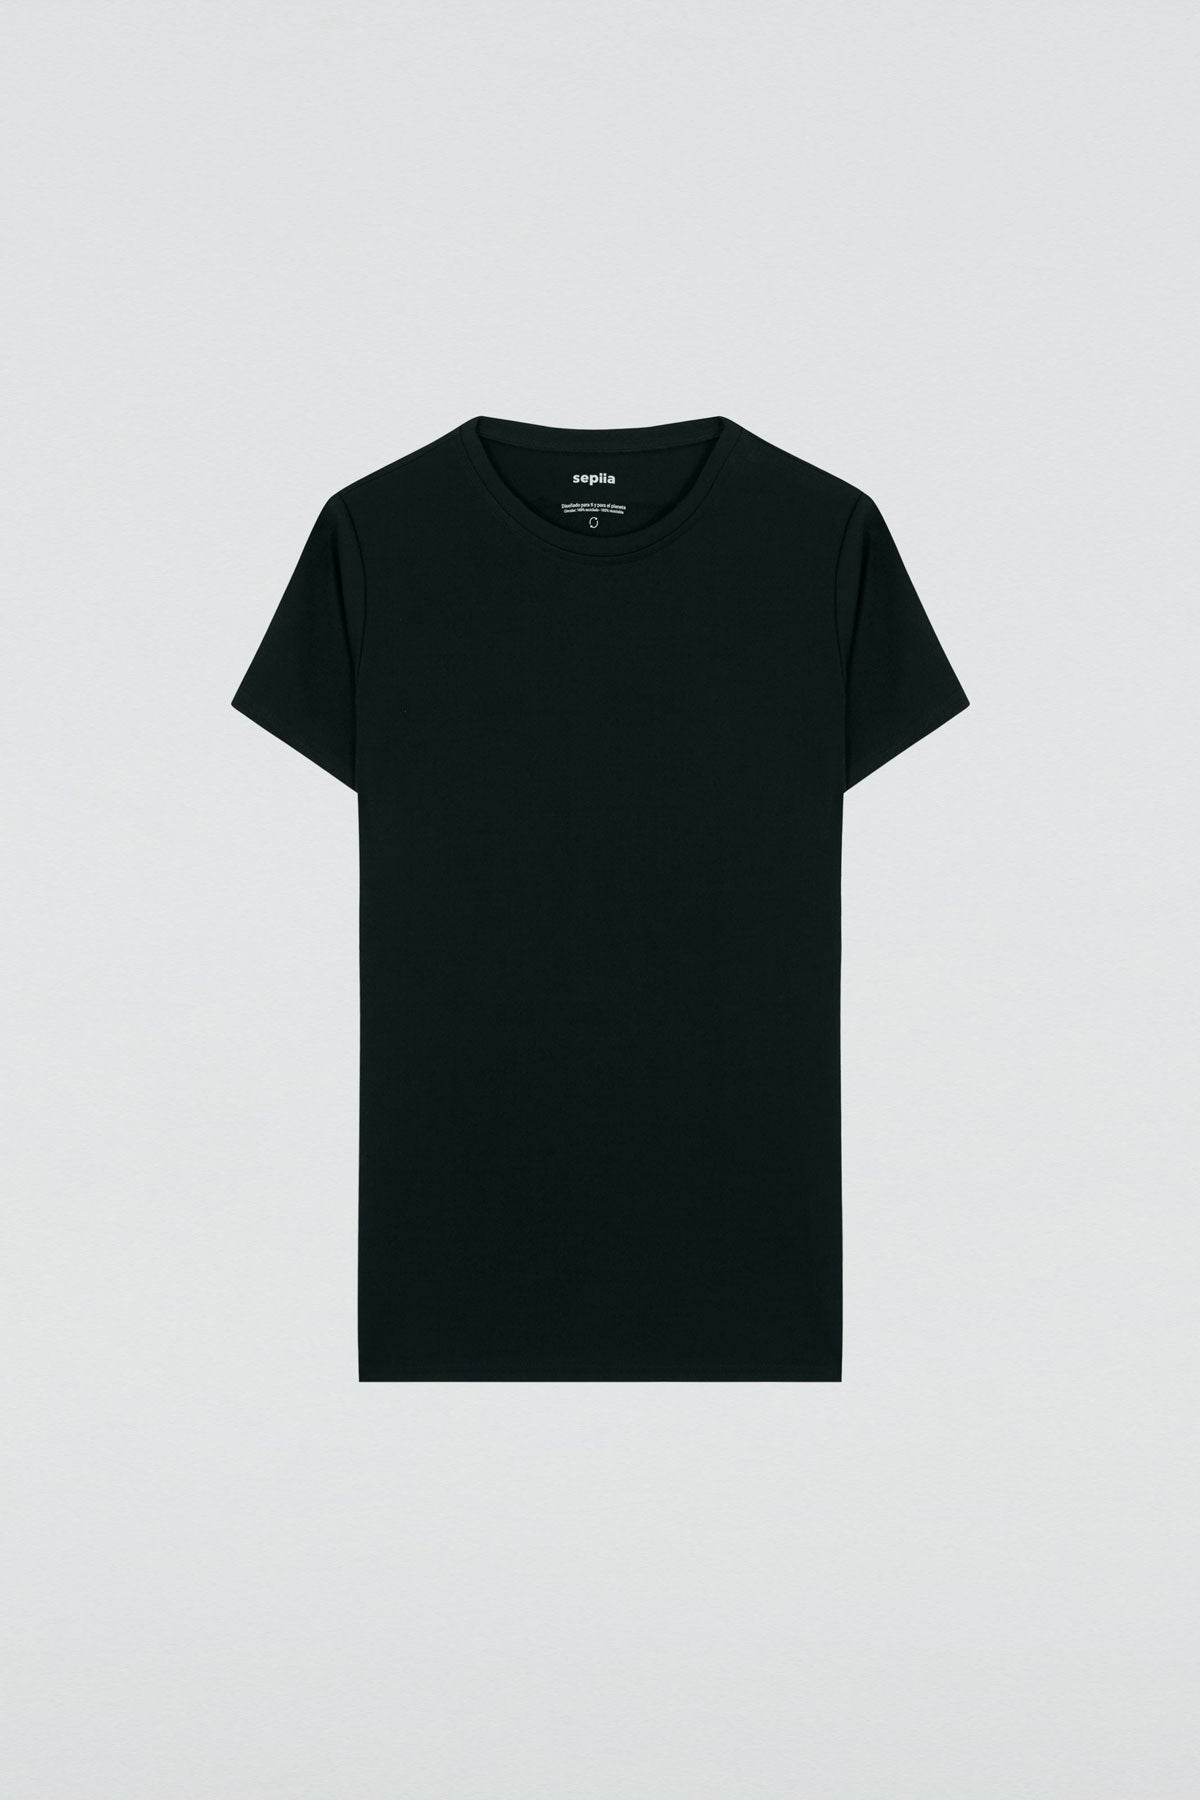 Camiseta básica para mujer en negro de Sepiia, fresca y resistente a manchas y arrugas. Foto plano